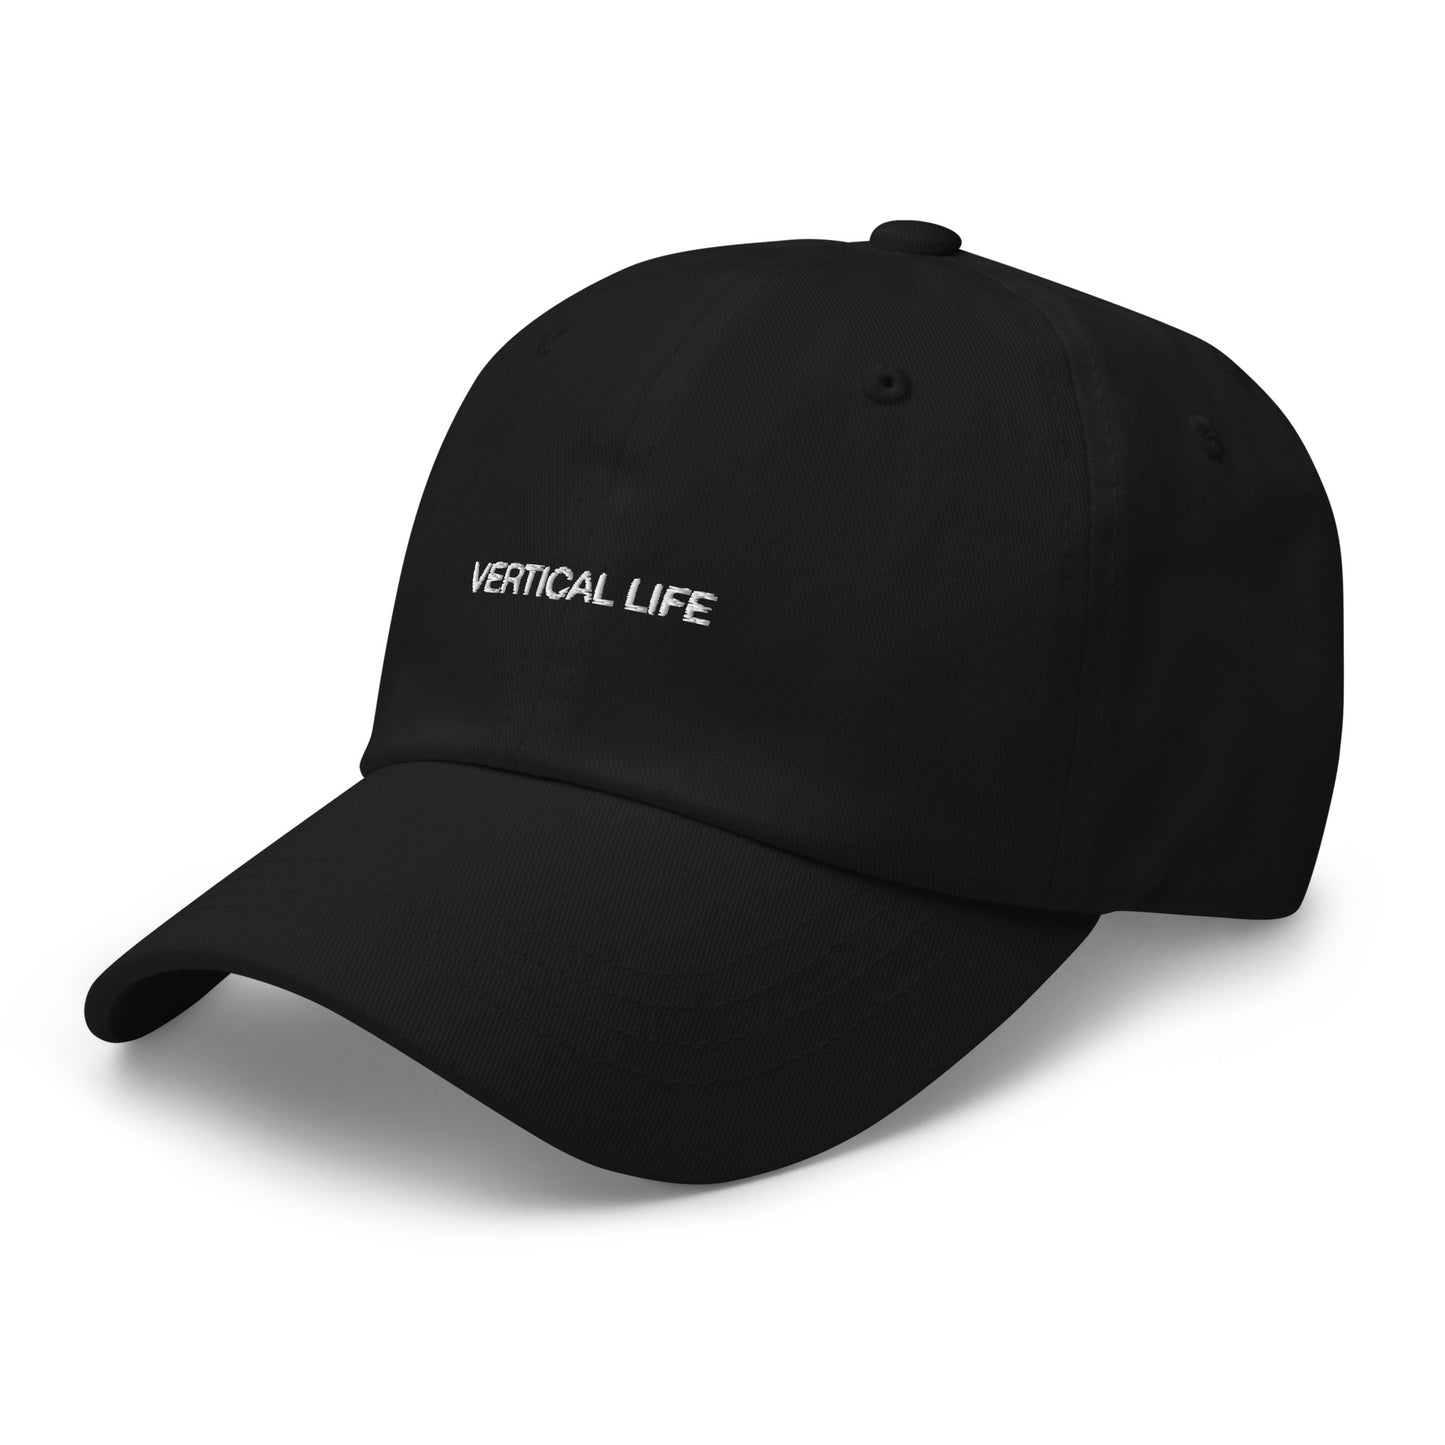 VLC DAD HAT